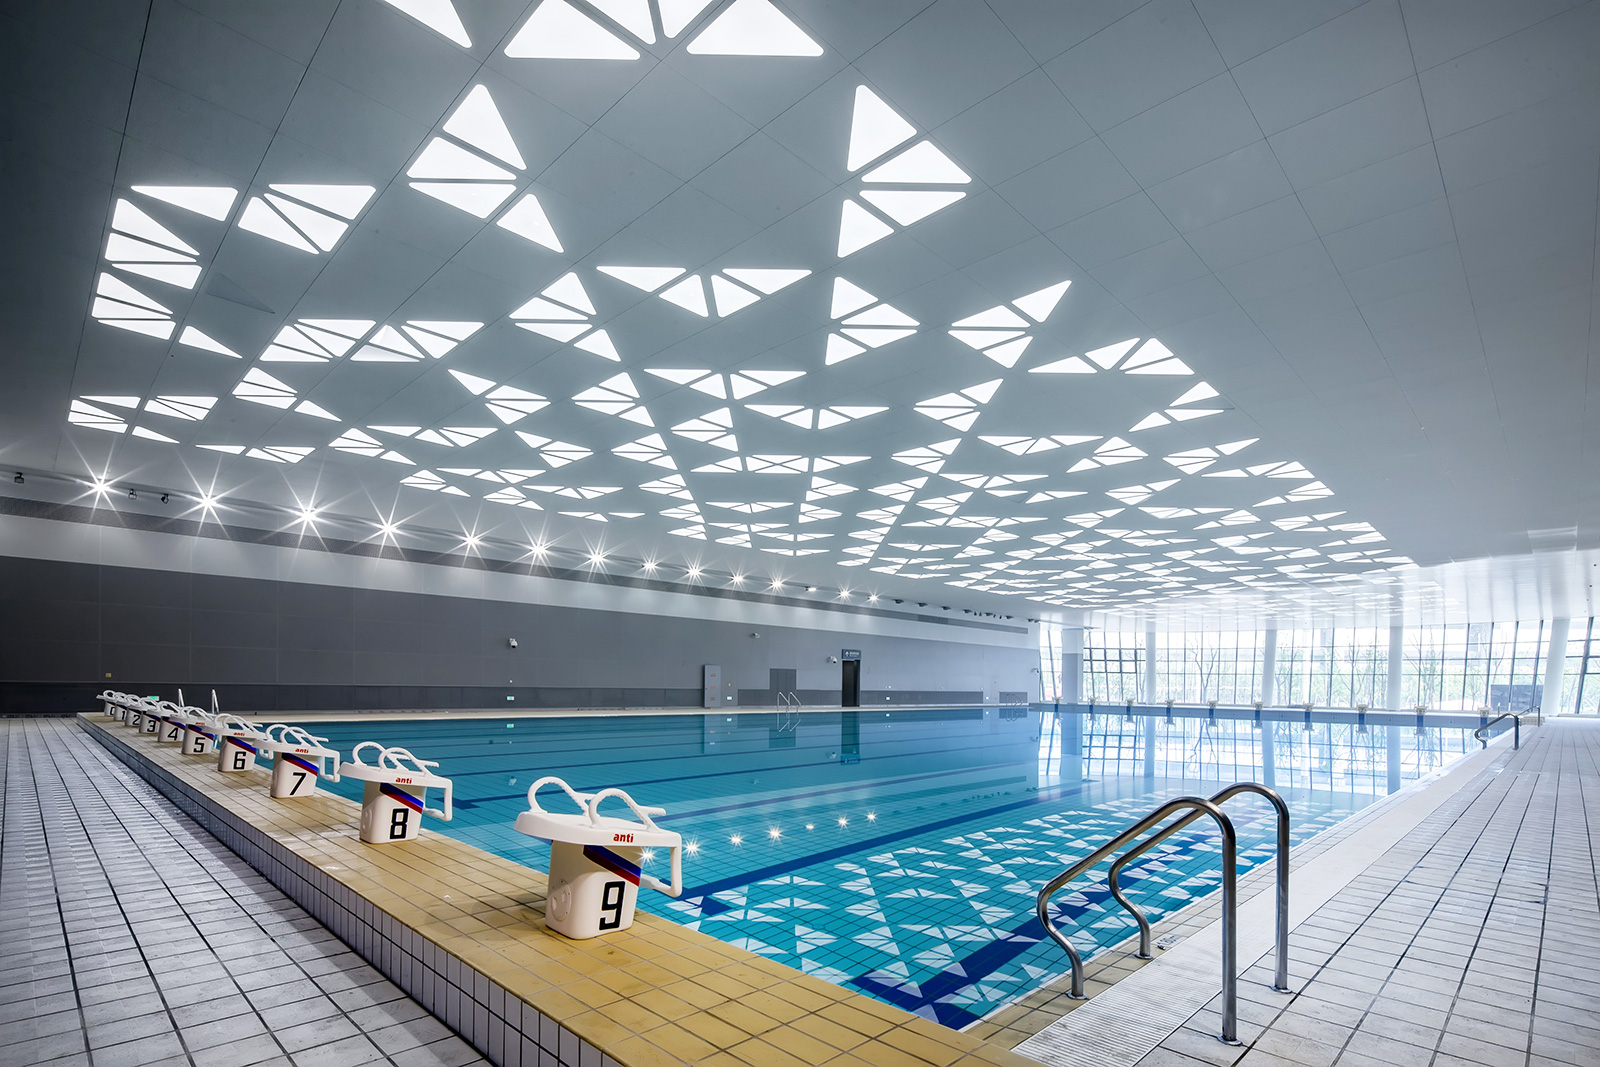 厦门游泳馆有哪些 厦门好的游泳馆推荐-厦门市培训机构服务中心